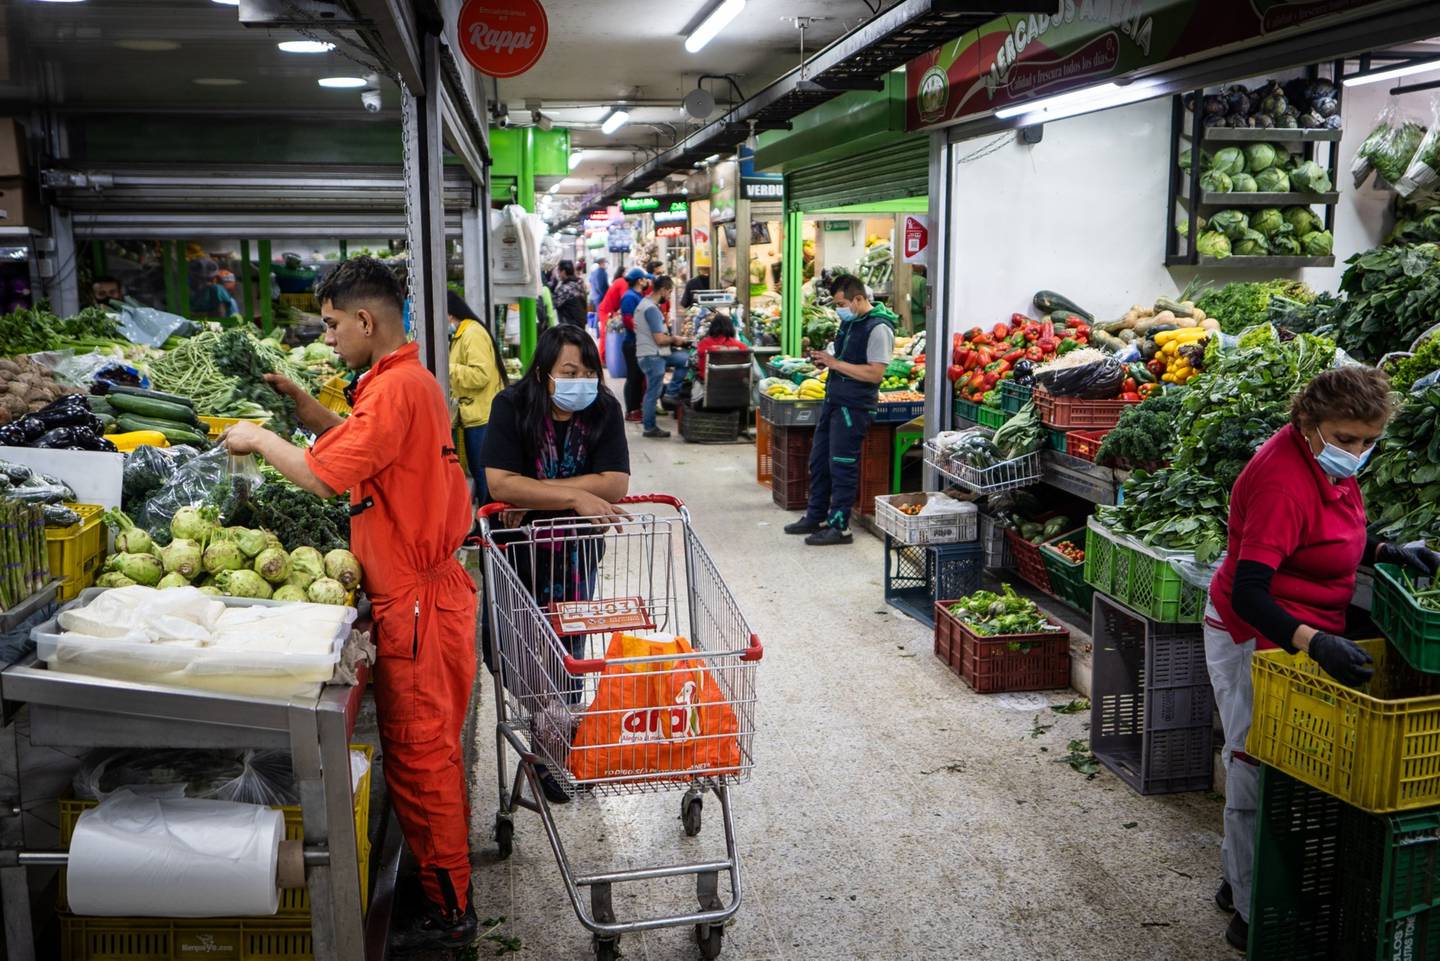 Un trabajador asiste a un cliente en un mercado de productos agrícolas en Bogotá, Colombia, el lunes 7 de febrero de 2022.dfd